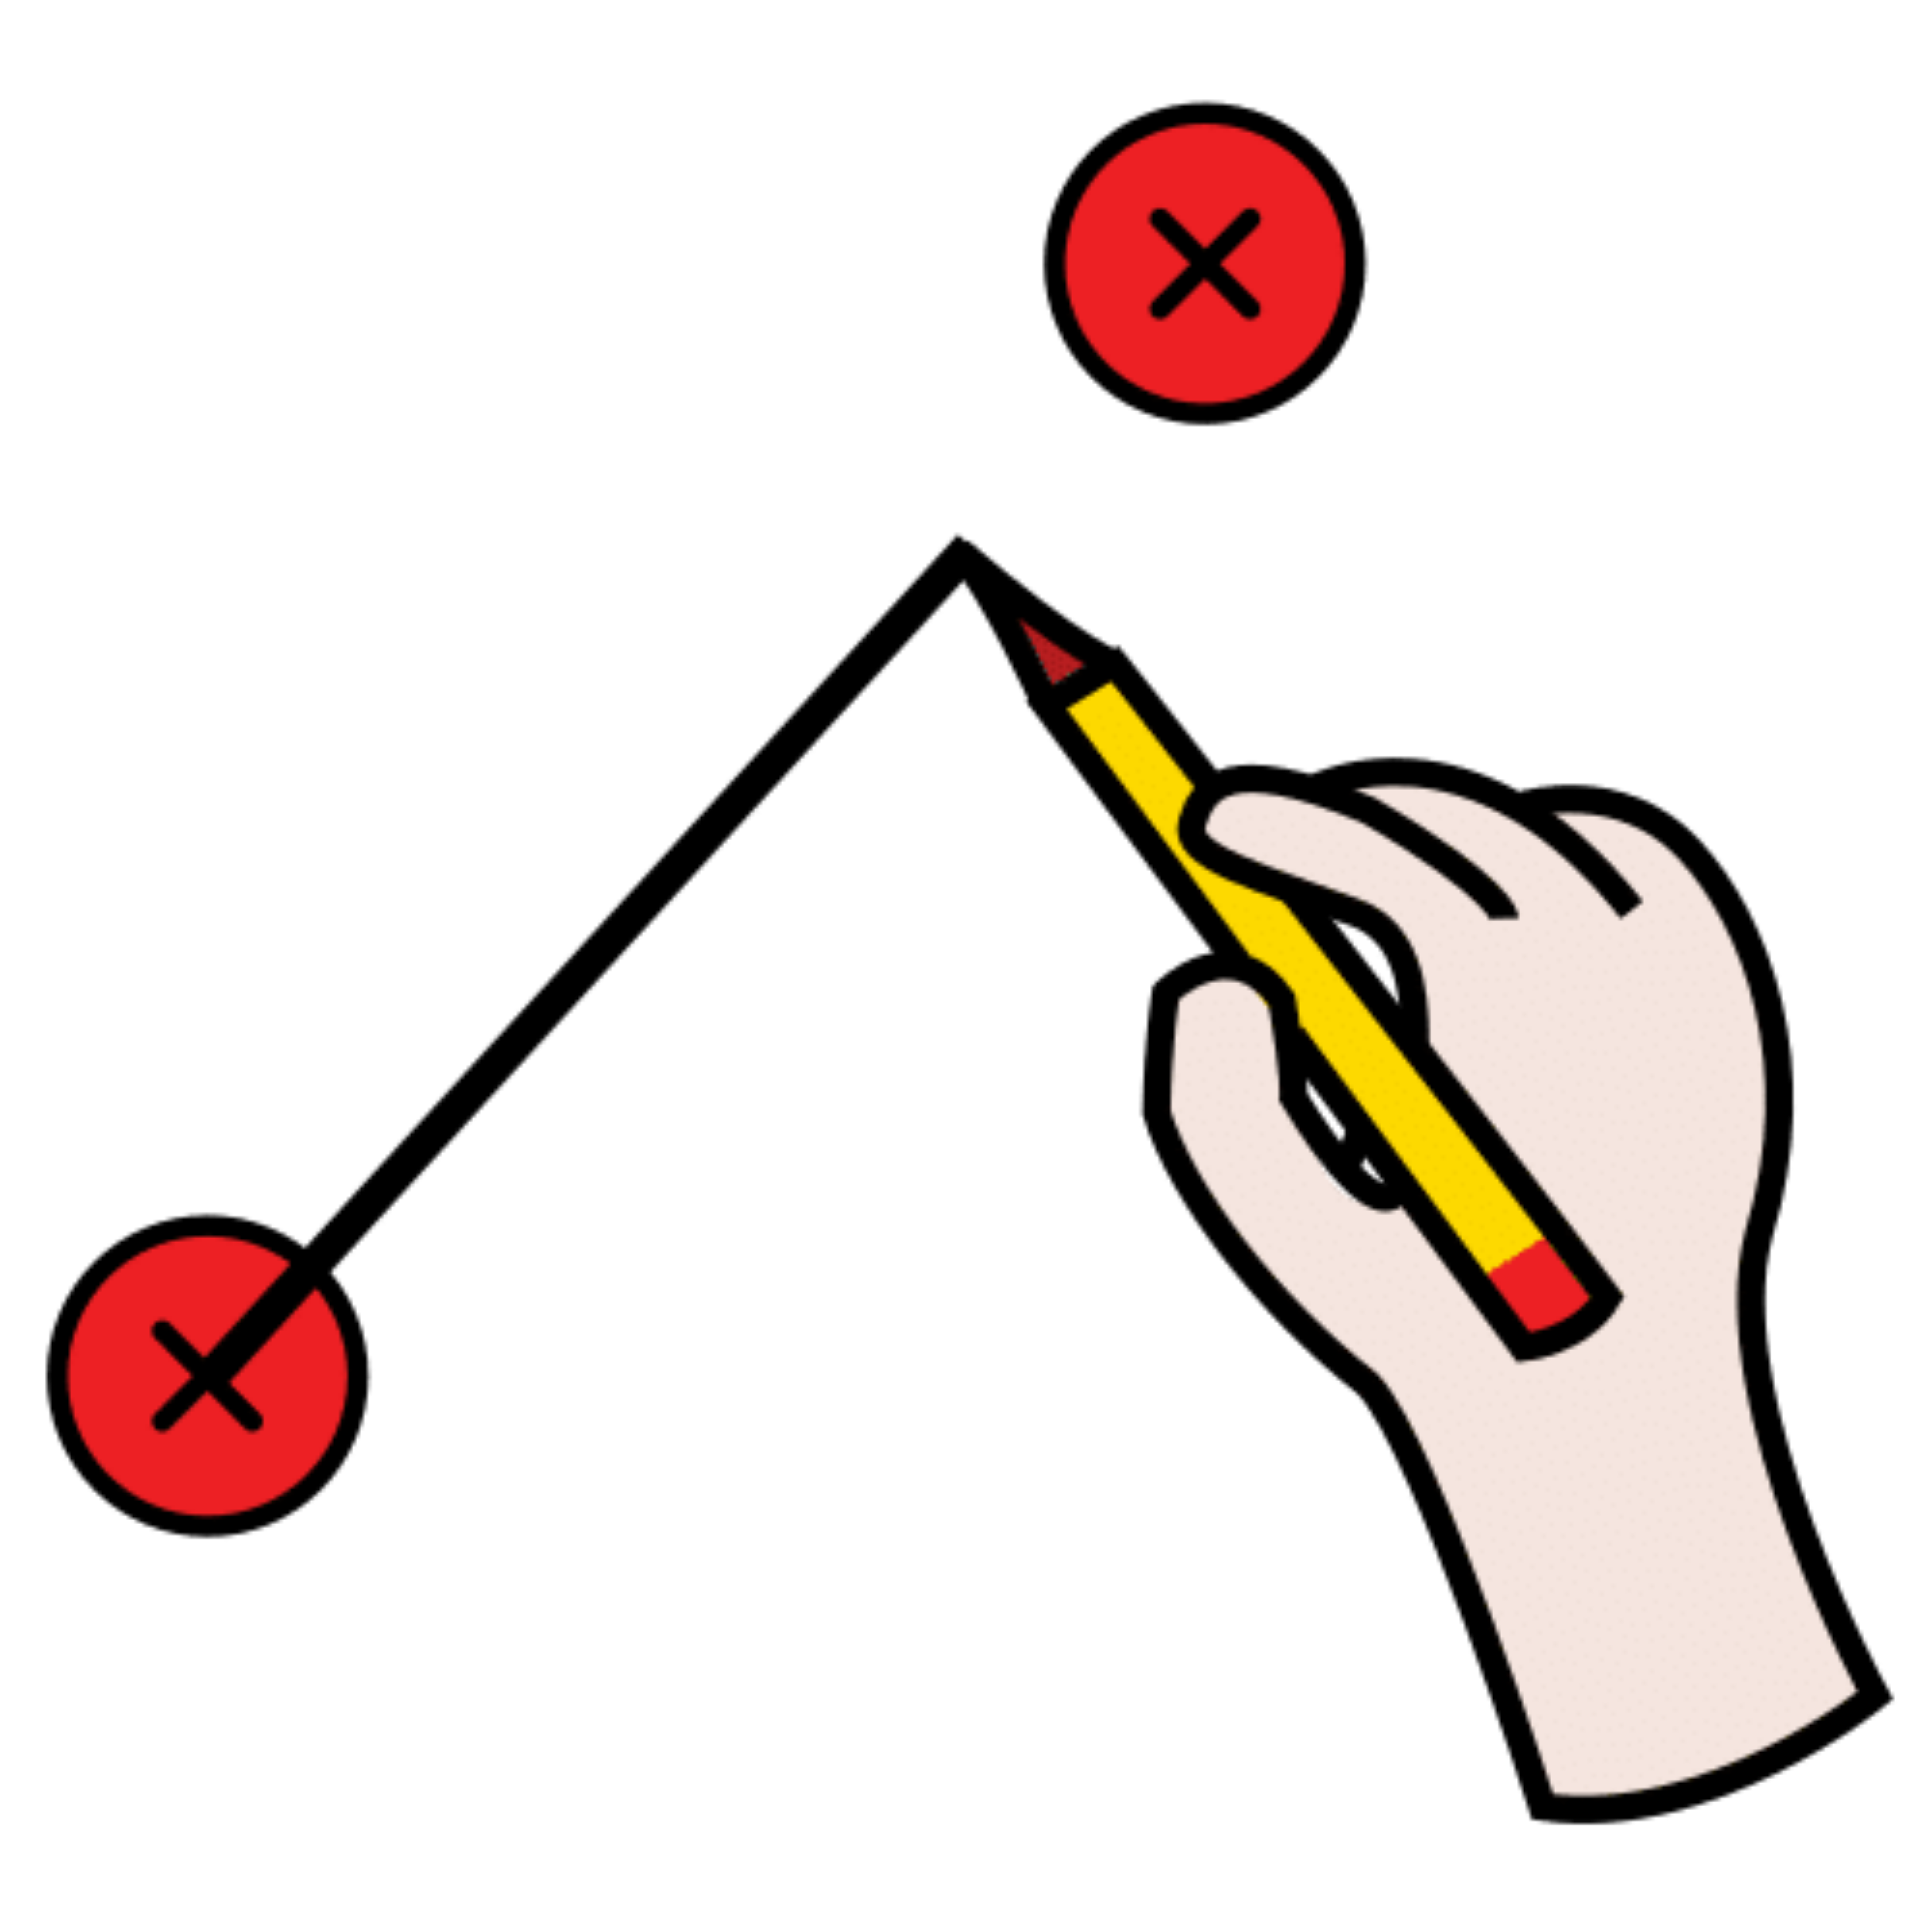 La imagen muestra una mano con un lápiz haciendo una línea uniendos dos puntos